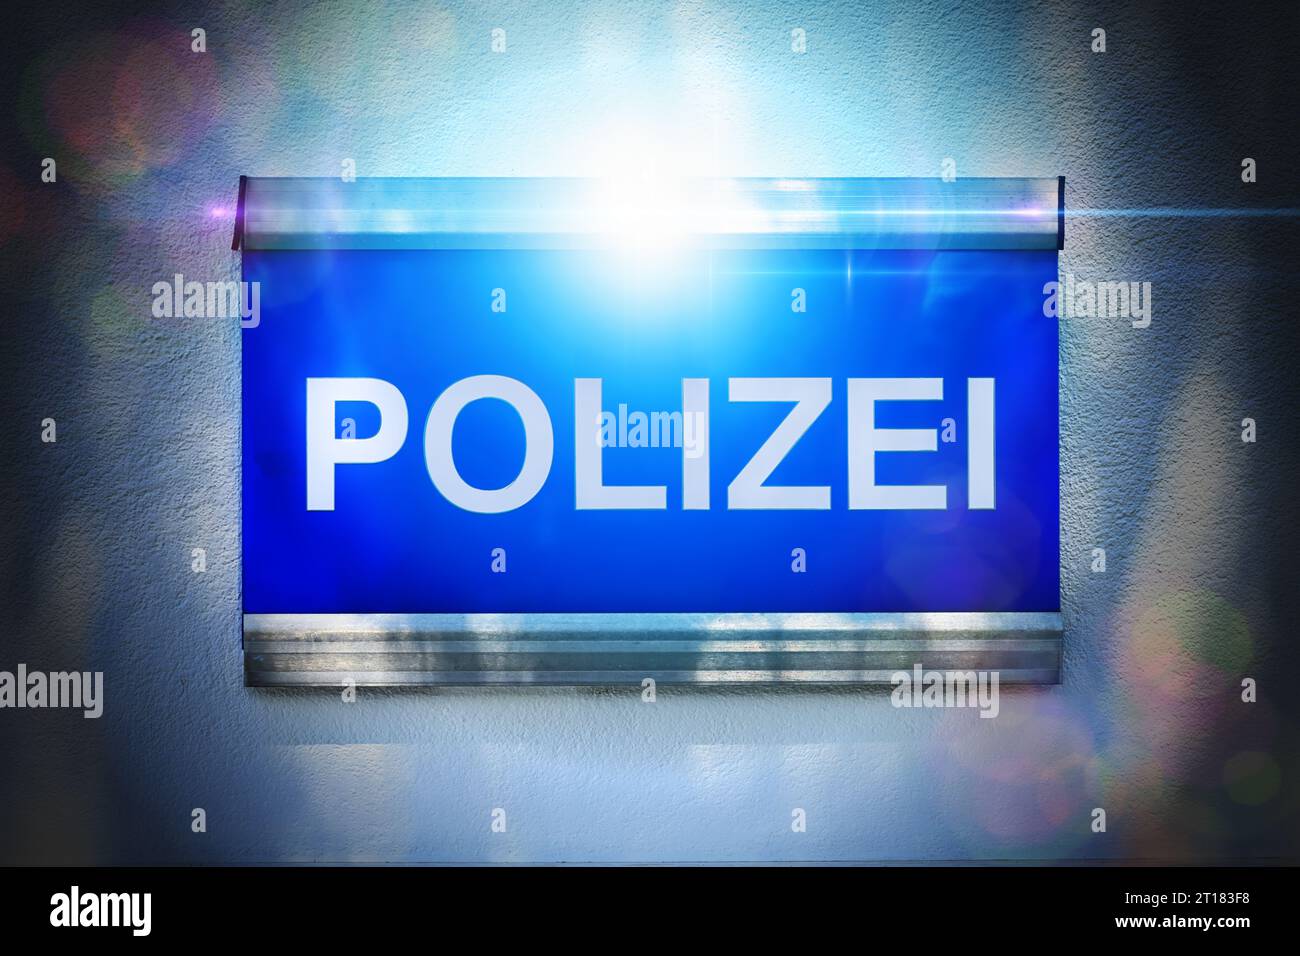 FOTOMONTAGE, Polizei-Schild mit Blaulicht Stock Photo